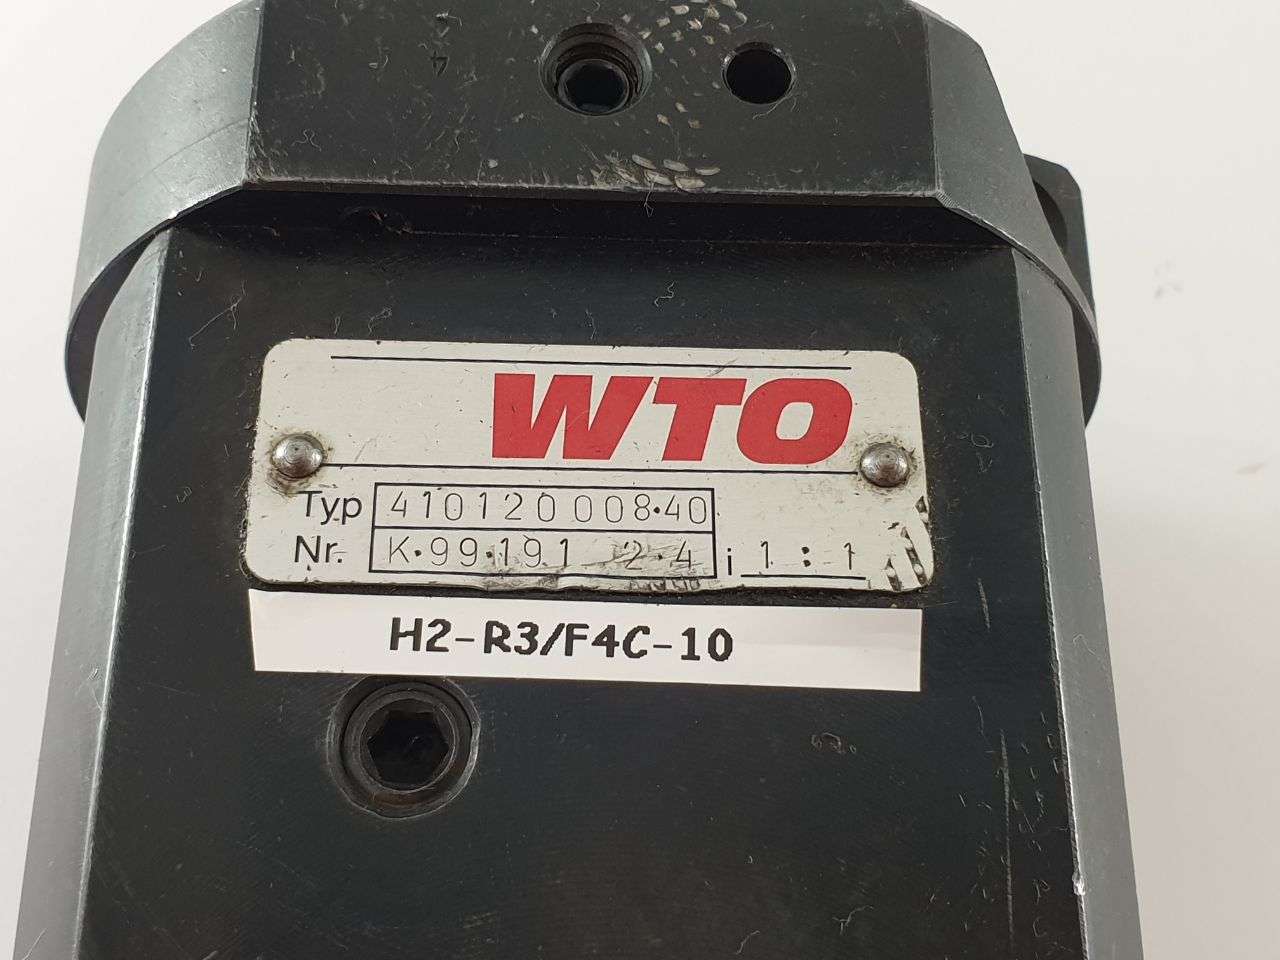 Werkzeughalter WTO VDI 40  -  410120008 40 Bilder auf Erdmann Export Import